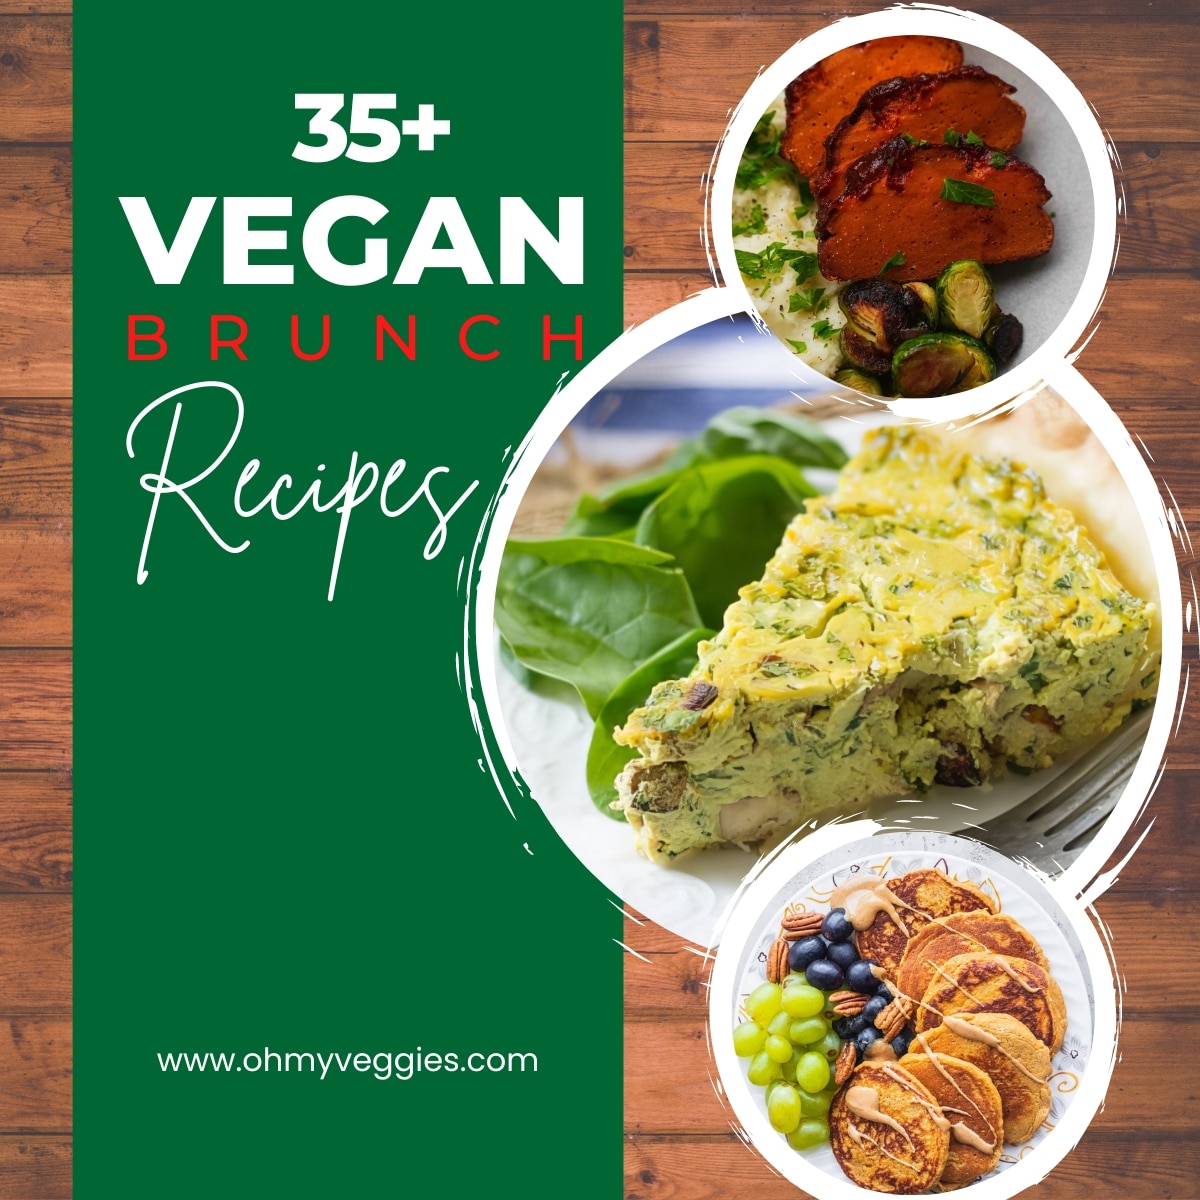 vegan brunch recipes